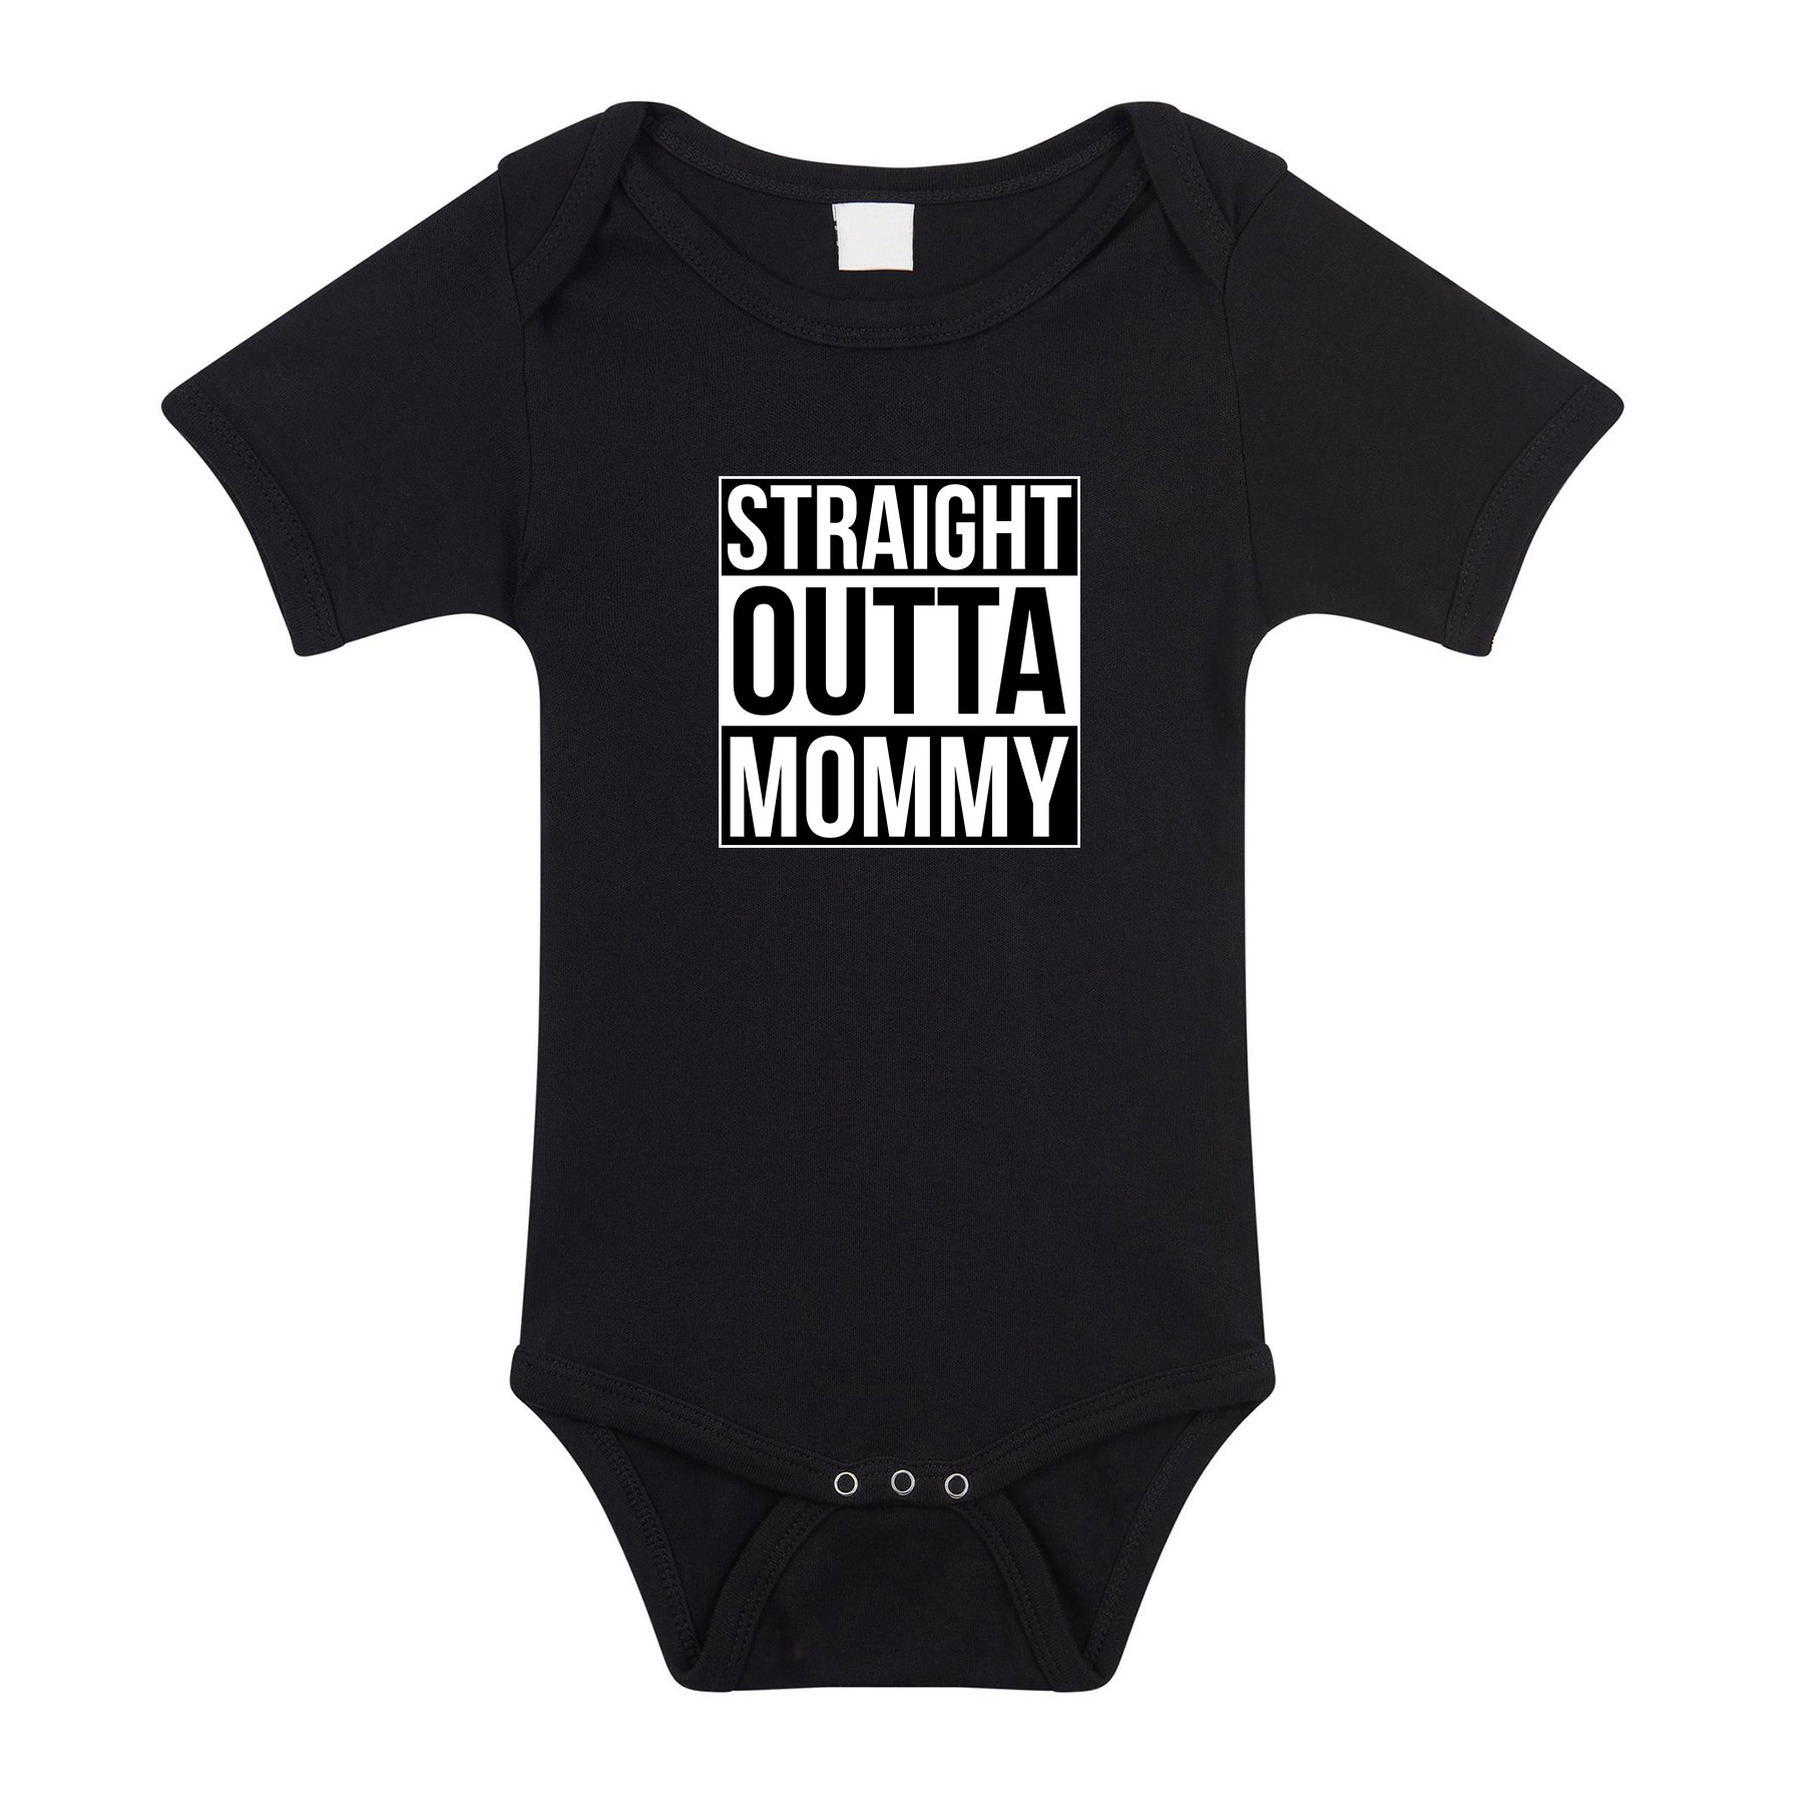 Straight outta mommy geboorte cadeau-kraamcadeau romper zwart voor babys